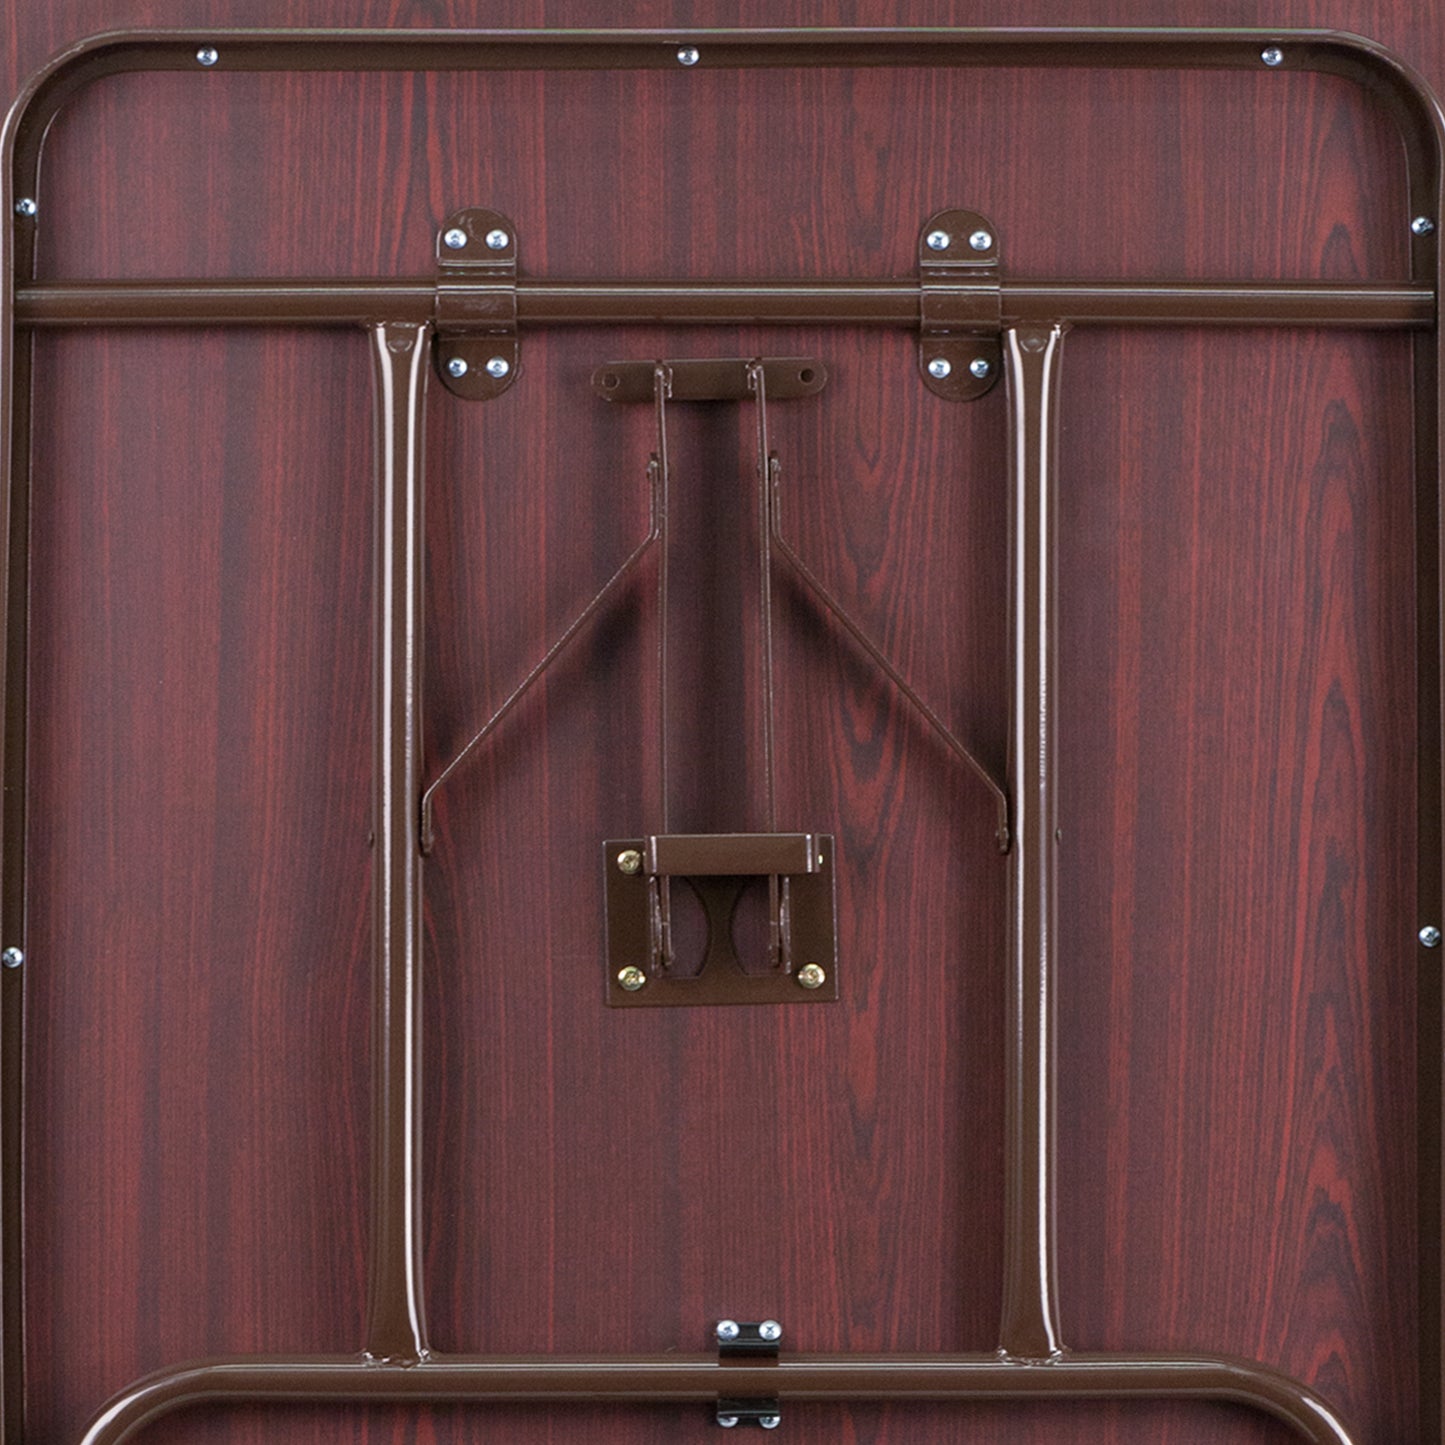 30x72 Mahogany Wood Fold Table YT-3072-MEL-WAL-GG